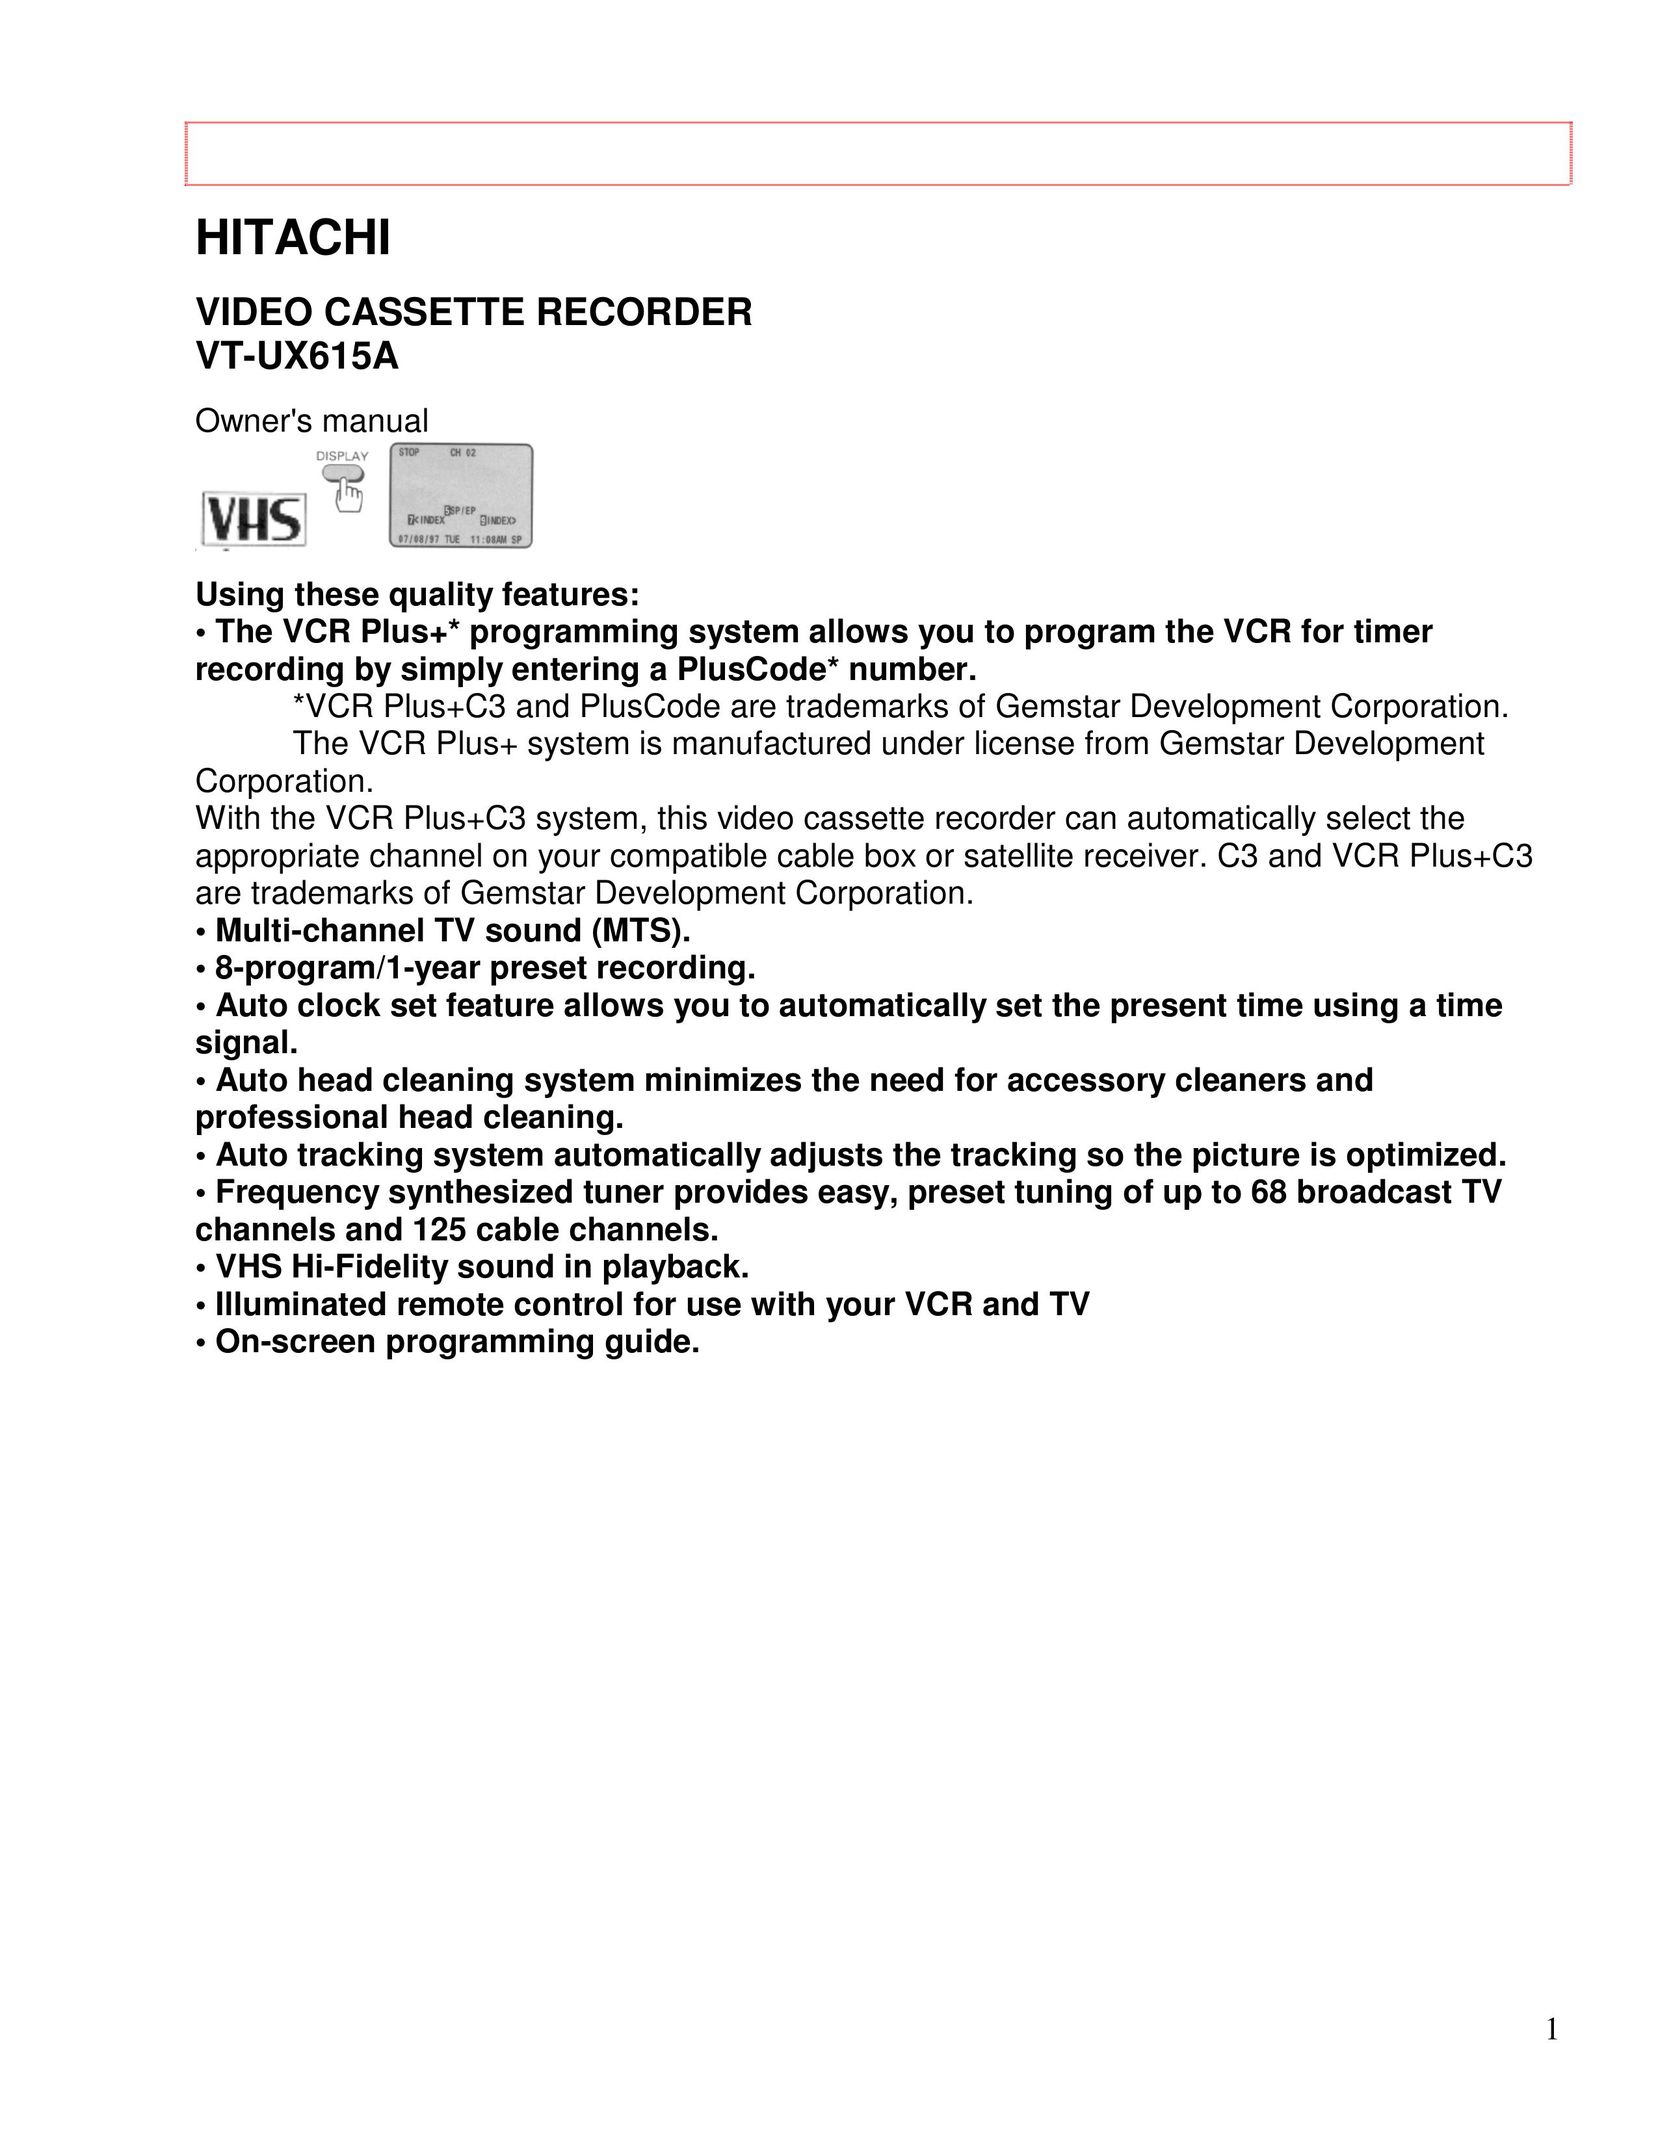 Hitachi VT-UX615A VCR User Manual